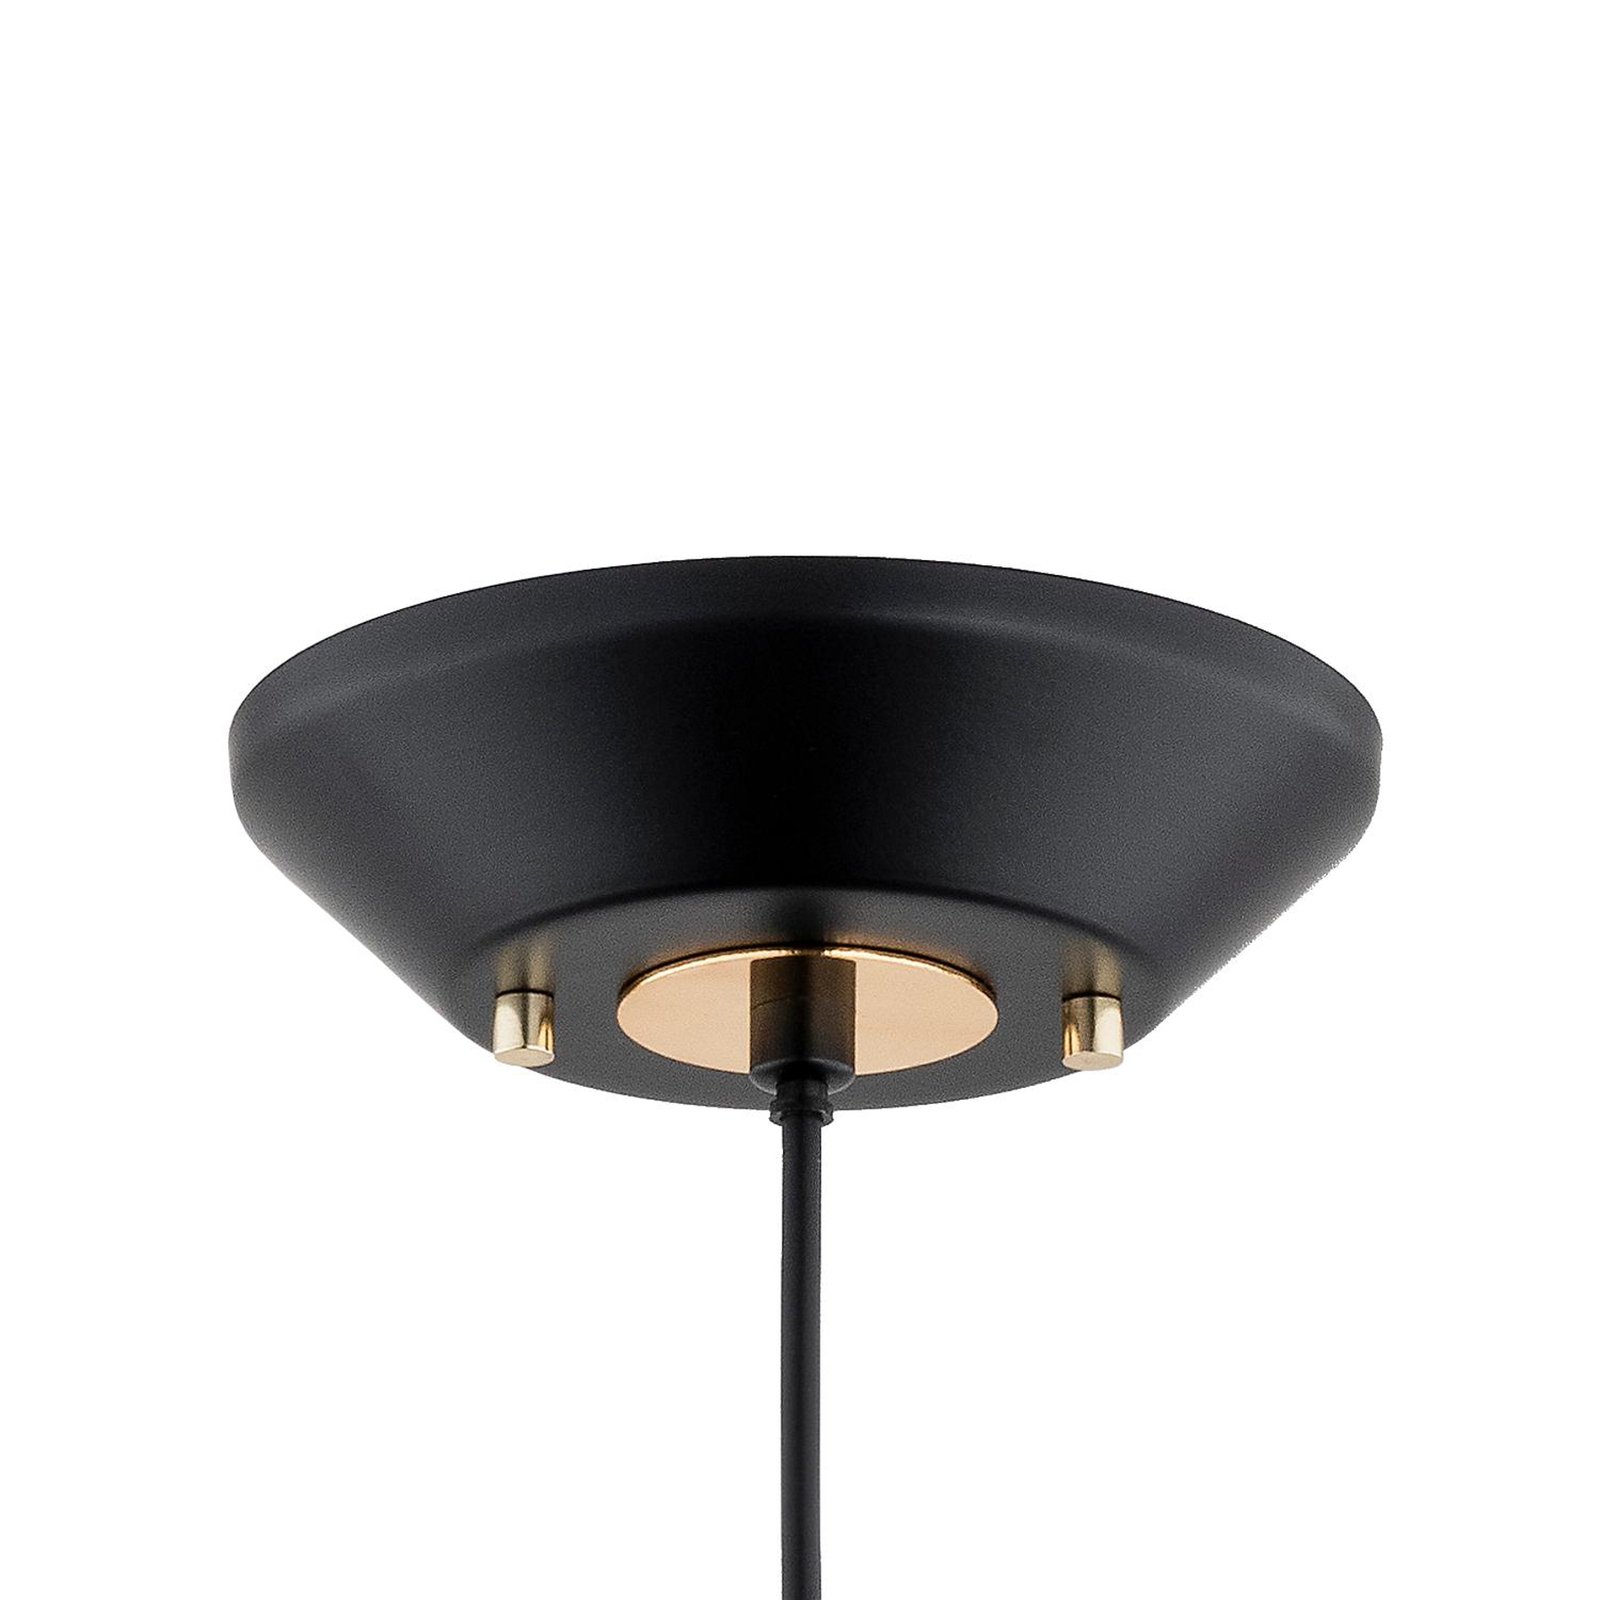 Lampa wisząca Mirave, kolor czarny/złoty, Ø 39,5 cm, metal